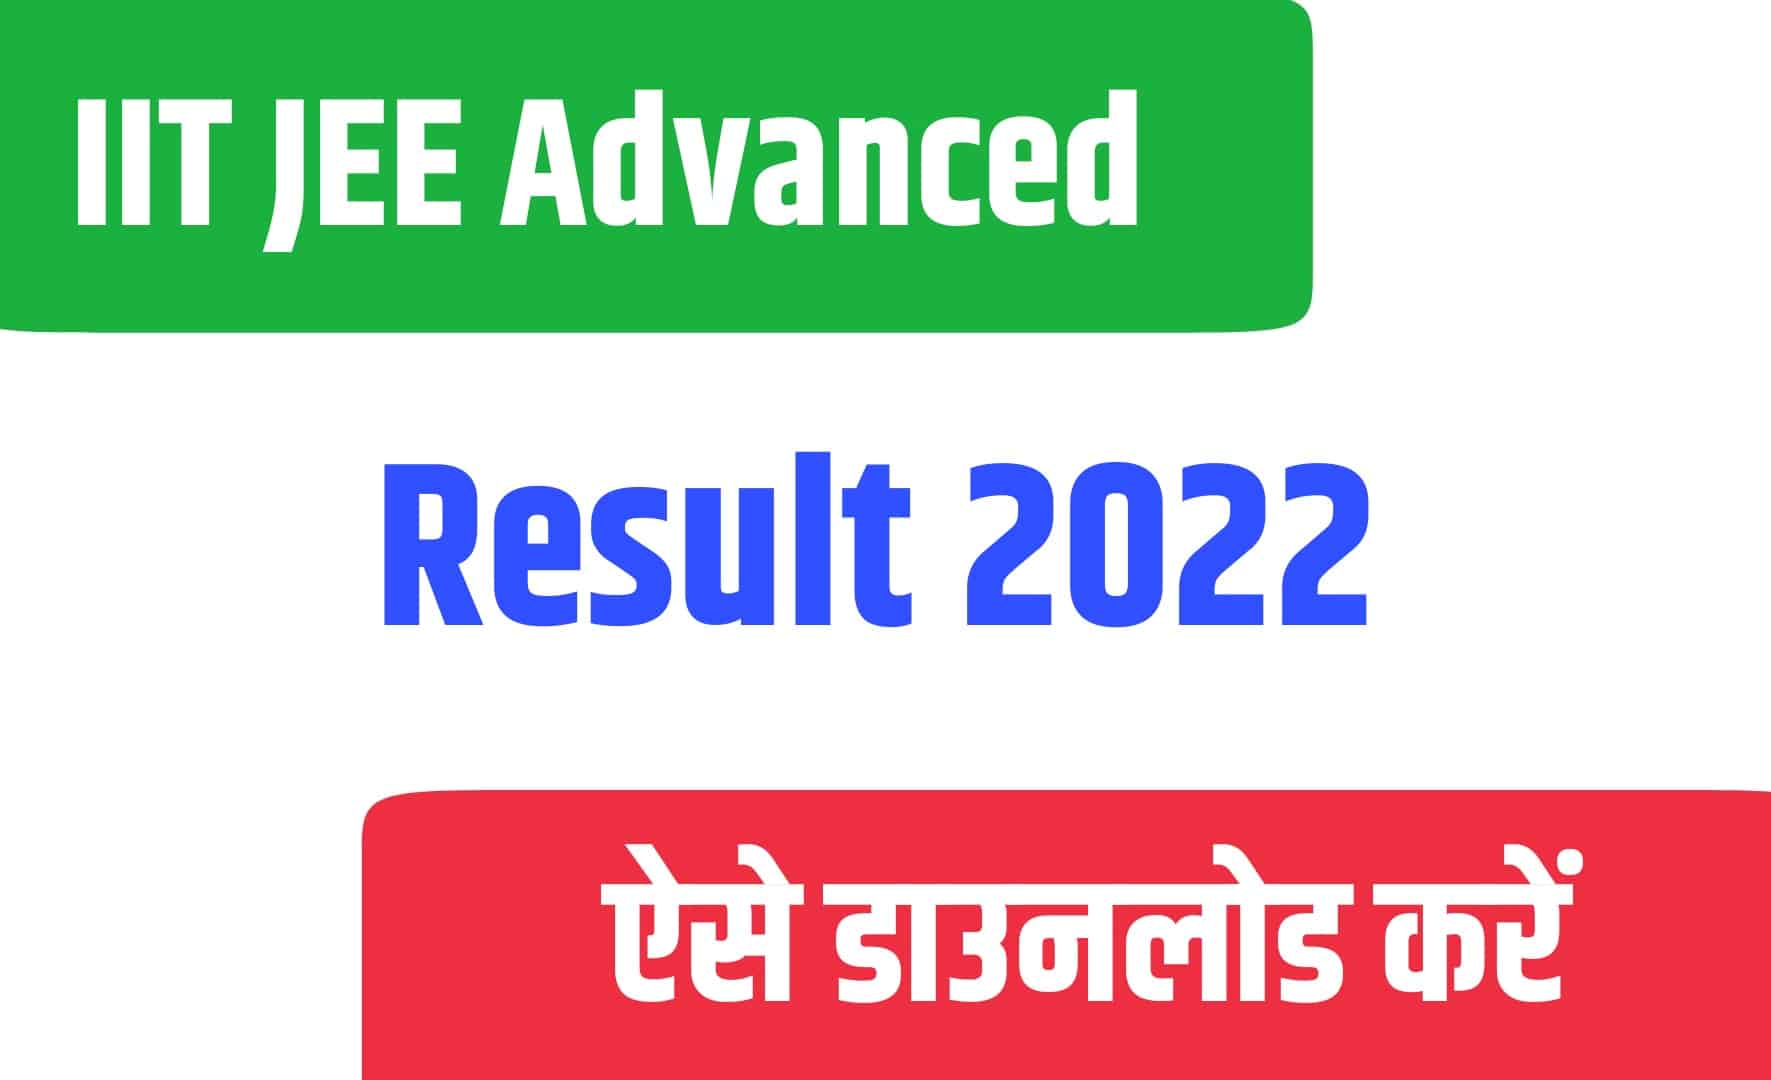 IIT JEE Advanced 2022 Result | आईआईटी जेई एडवांस परीक्षा का रिजल्ट जारी